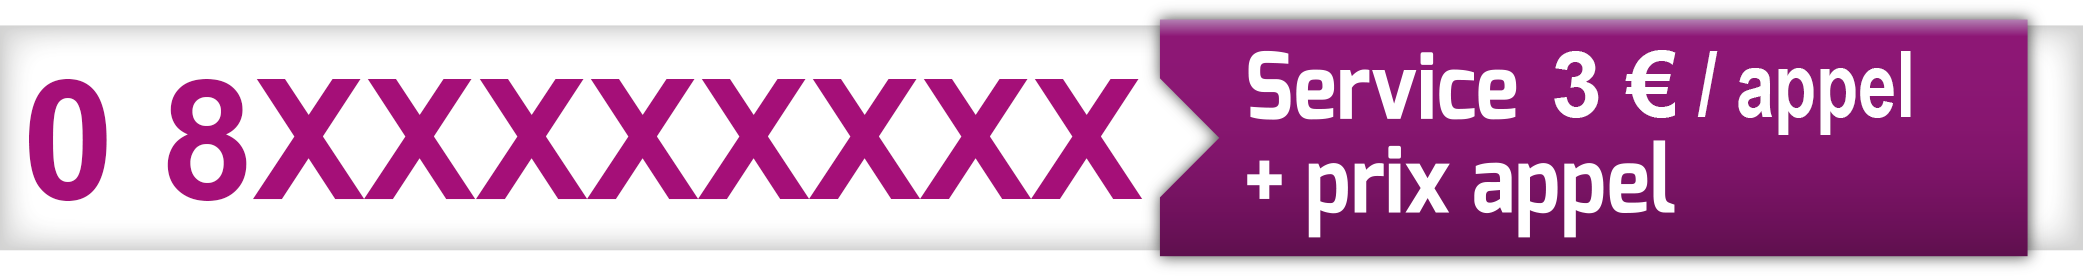 AliExpress France - Renseignement tel